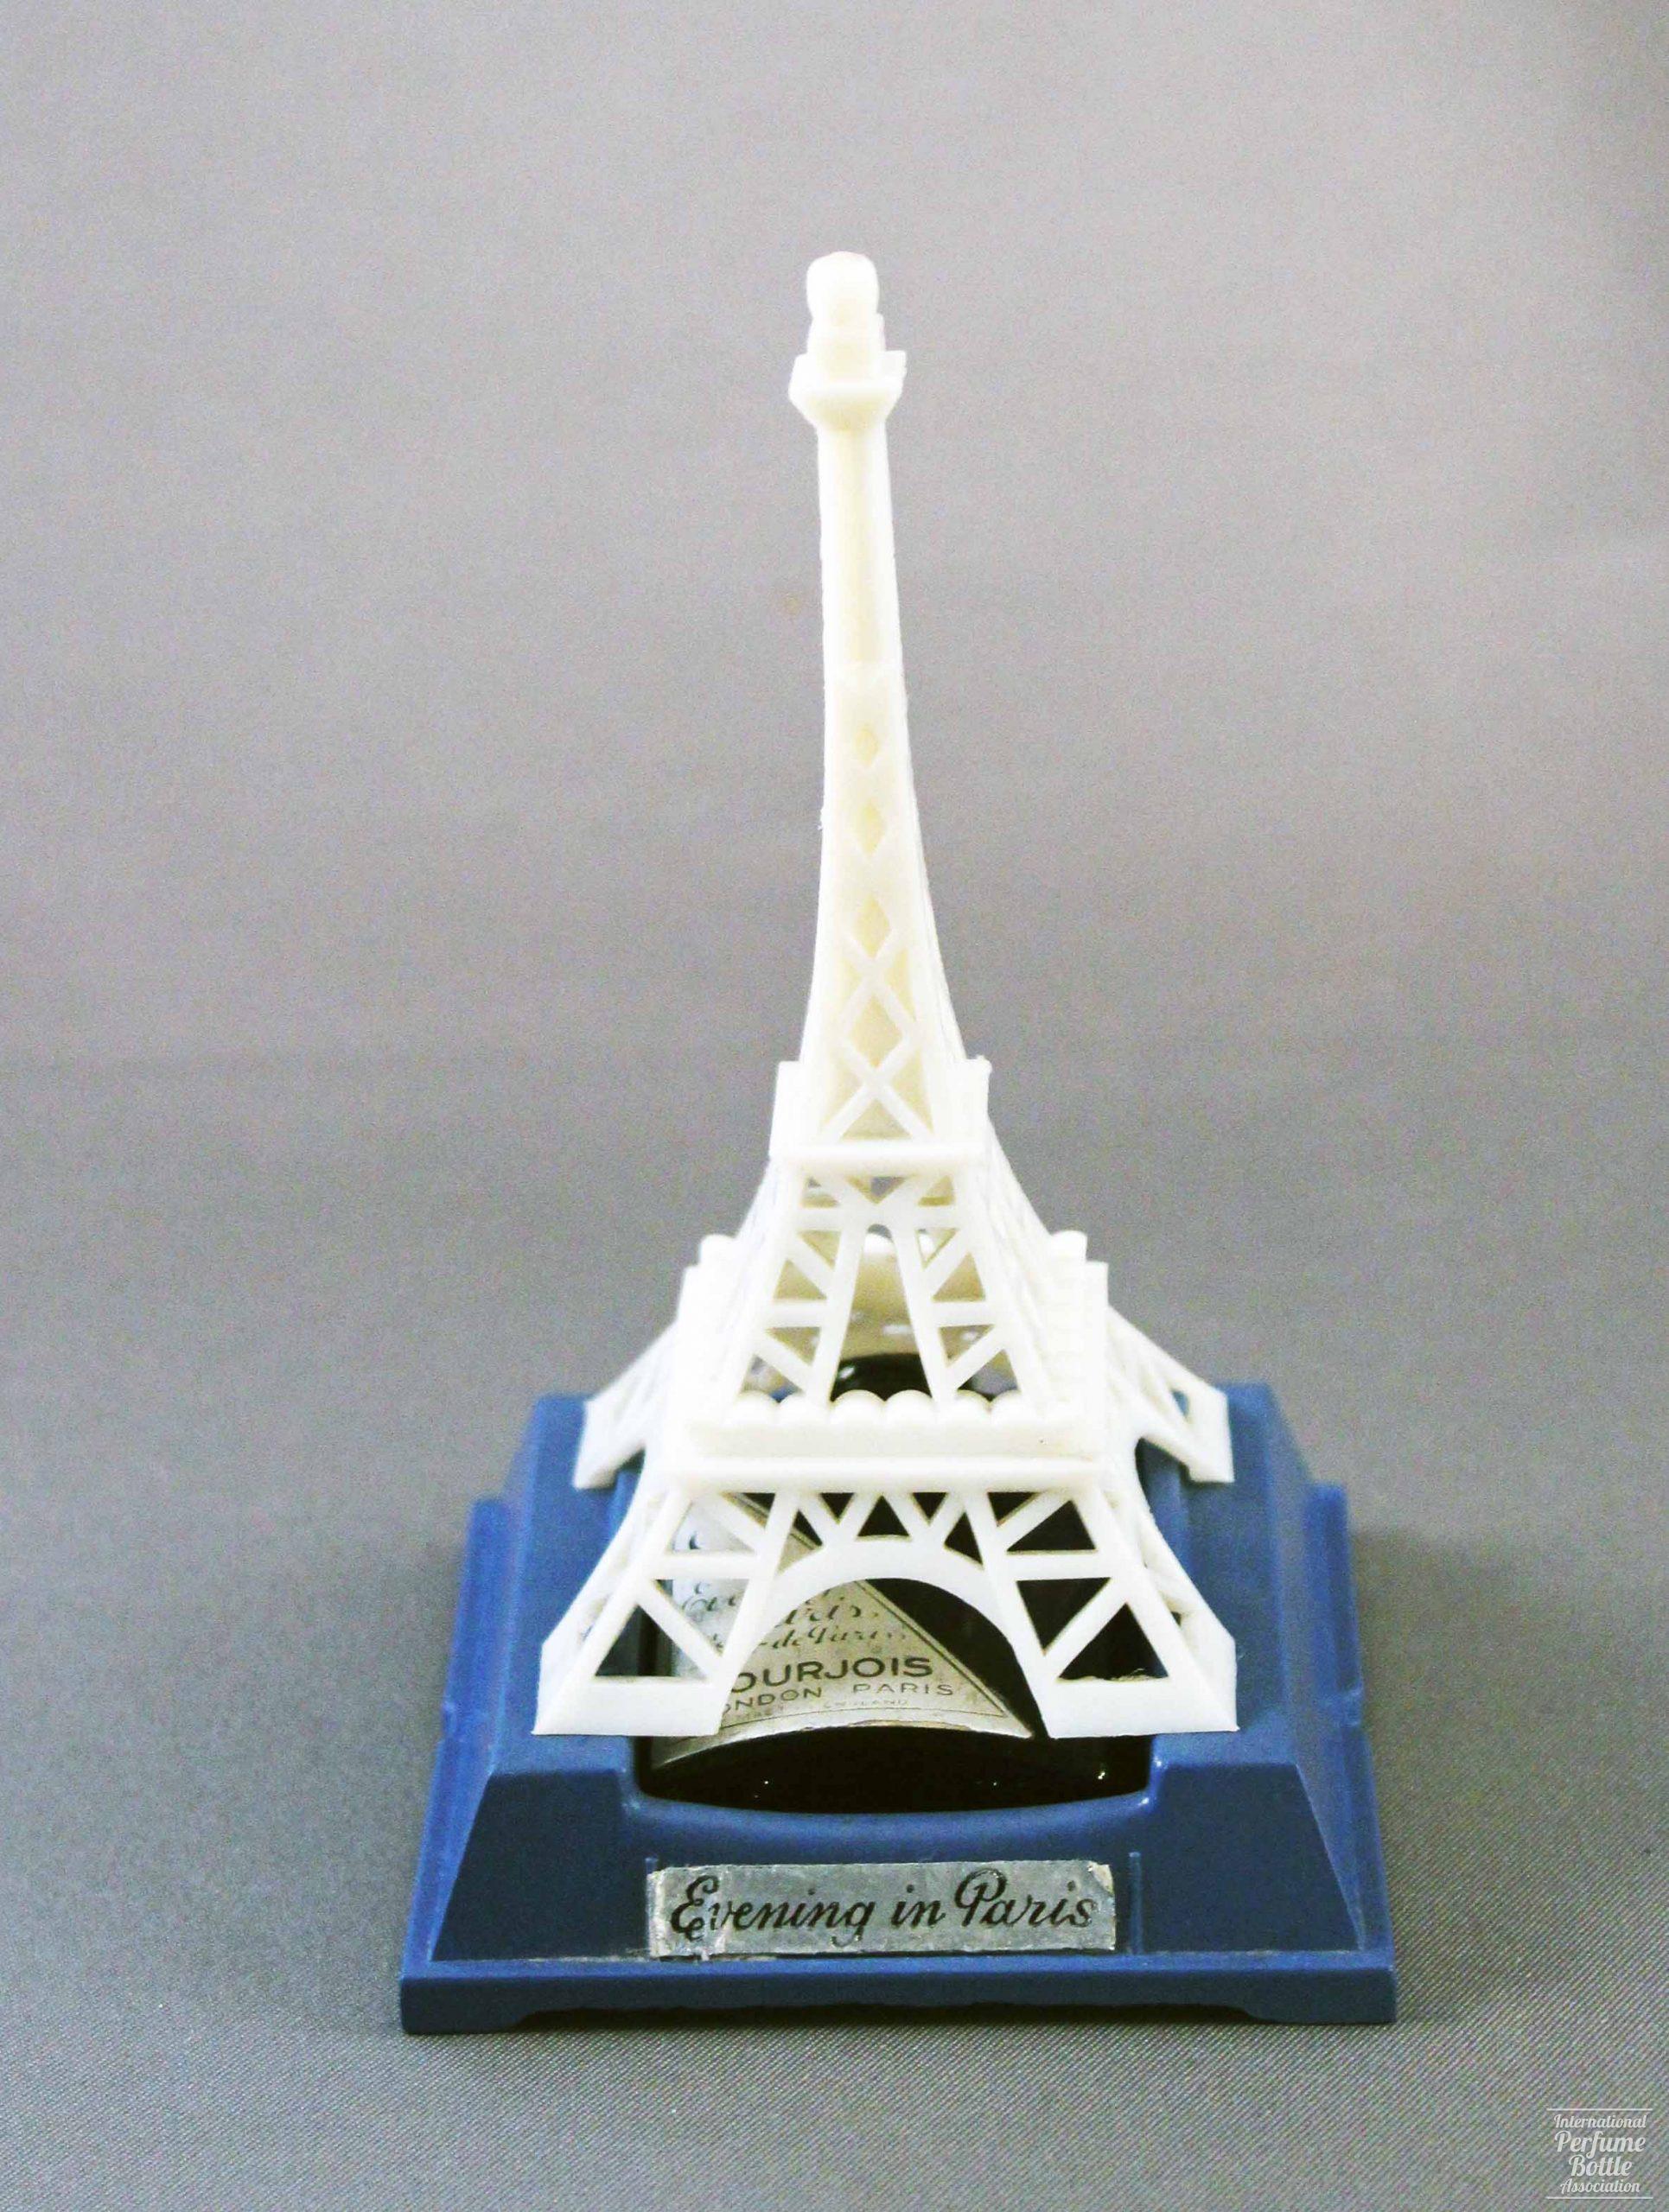 "Evening in Paris" by Bourjois, Eiffel Tower Presentation